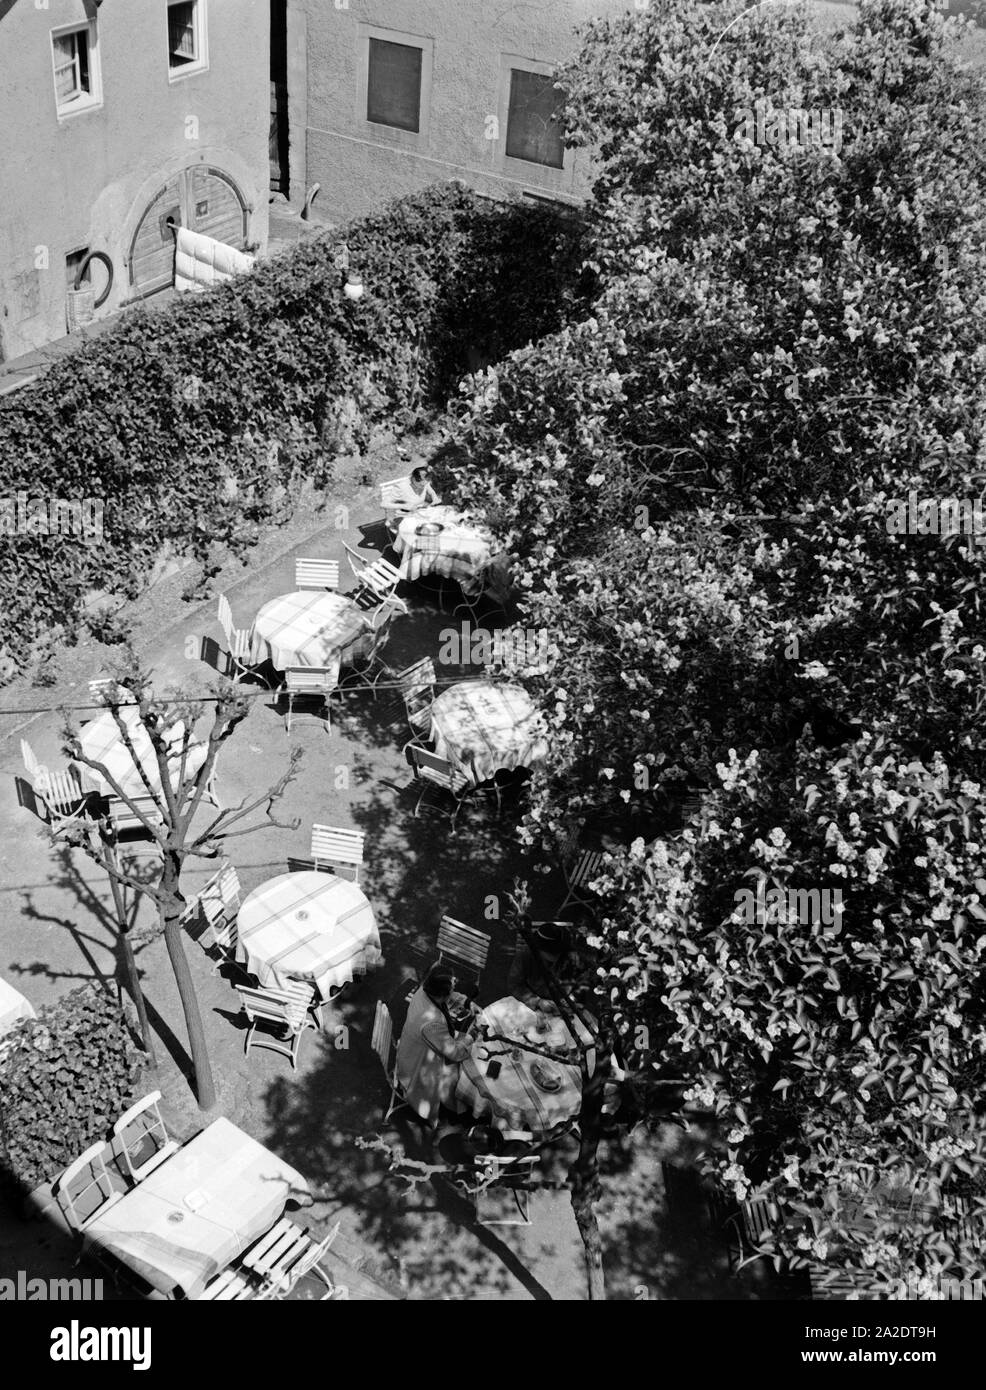 Nette kleine Außengastronomie in einem Innenhof in Miltenberg, Deutschland 1930er Jahre. Bella piccola ristorazione in un cortile a Miltenberg, Germania 1930s. Foto Stock